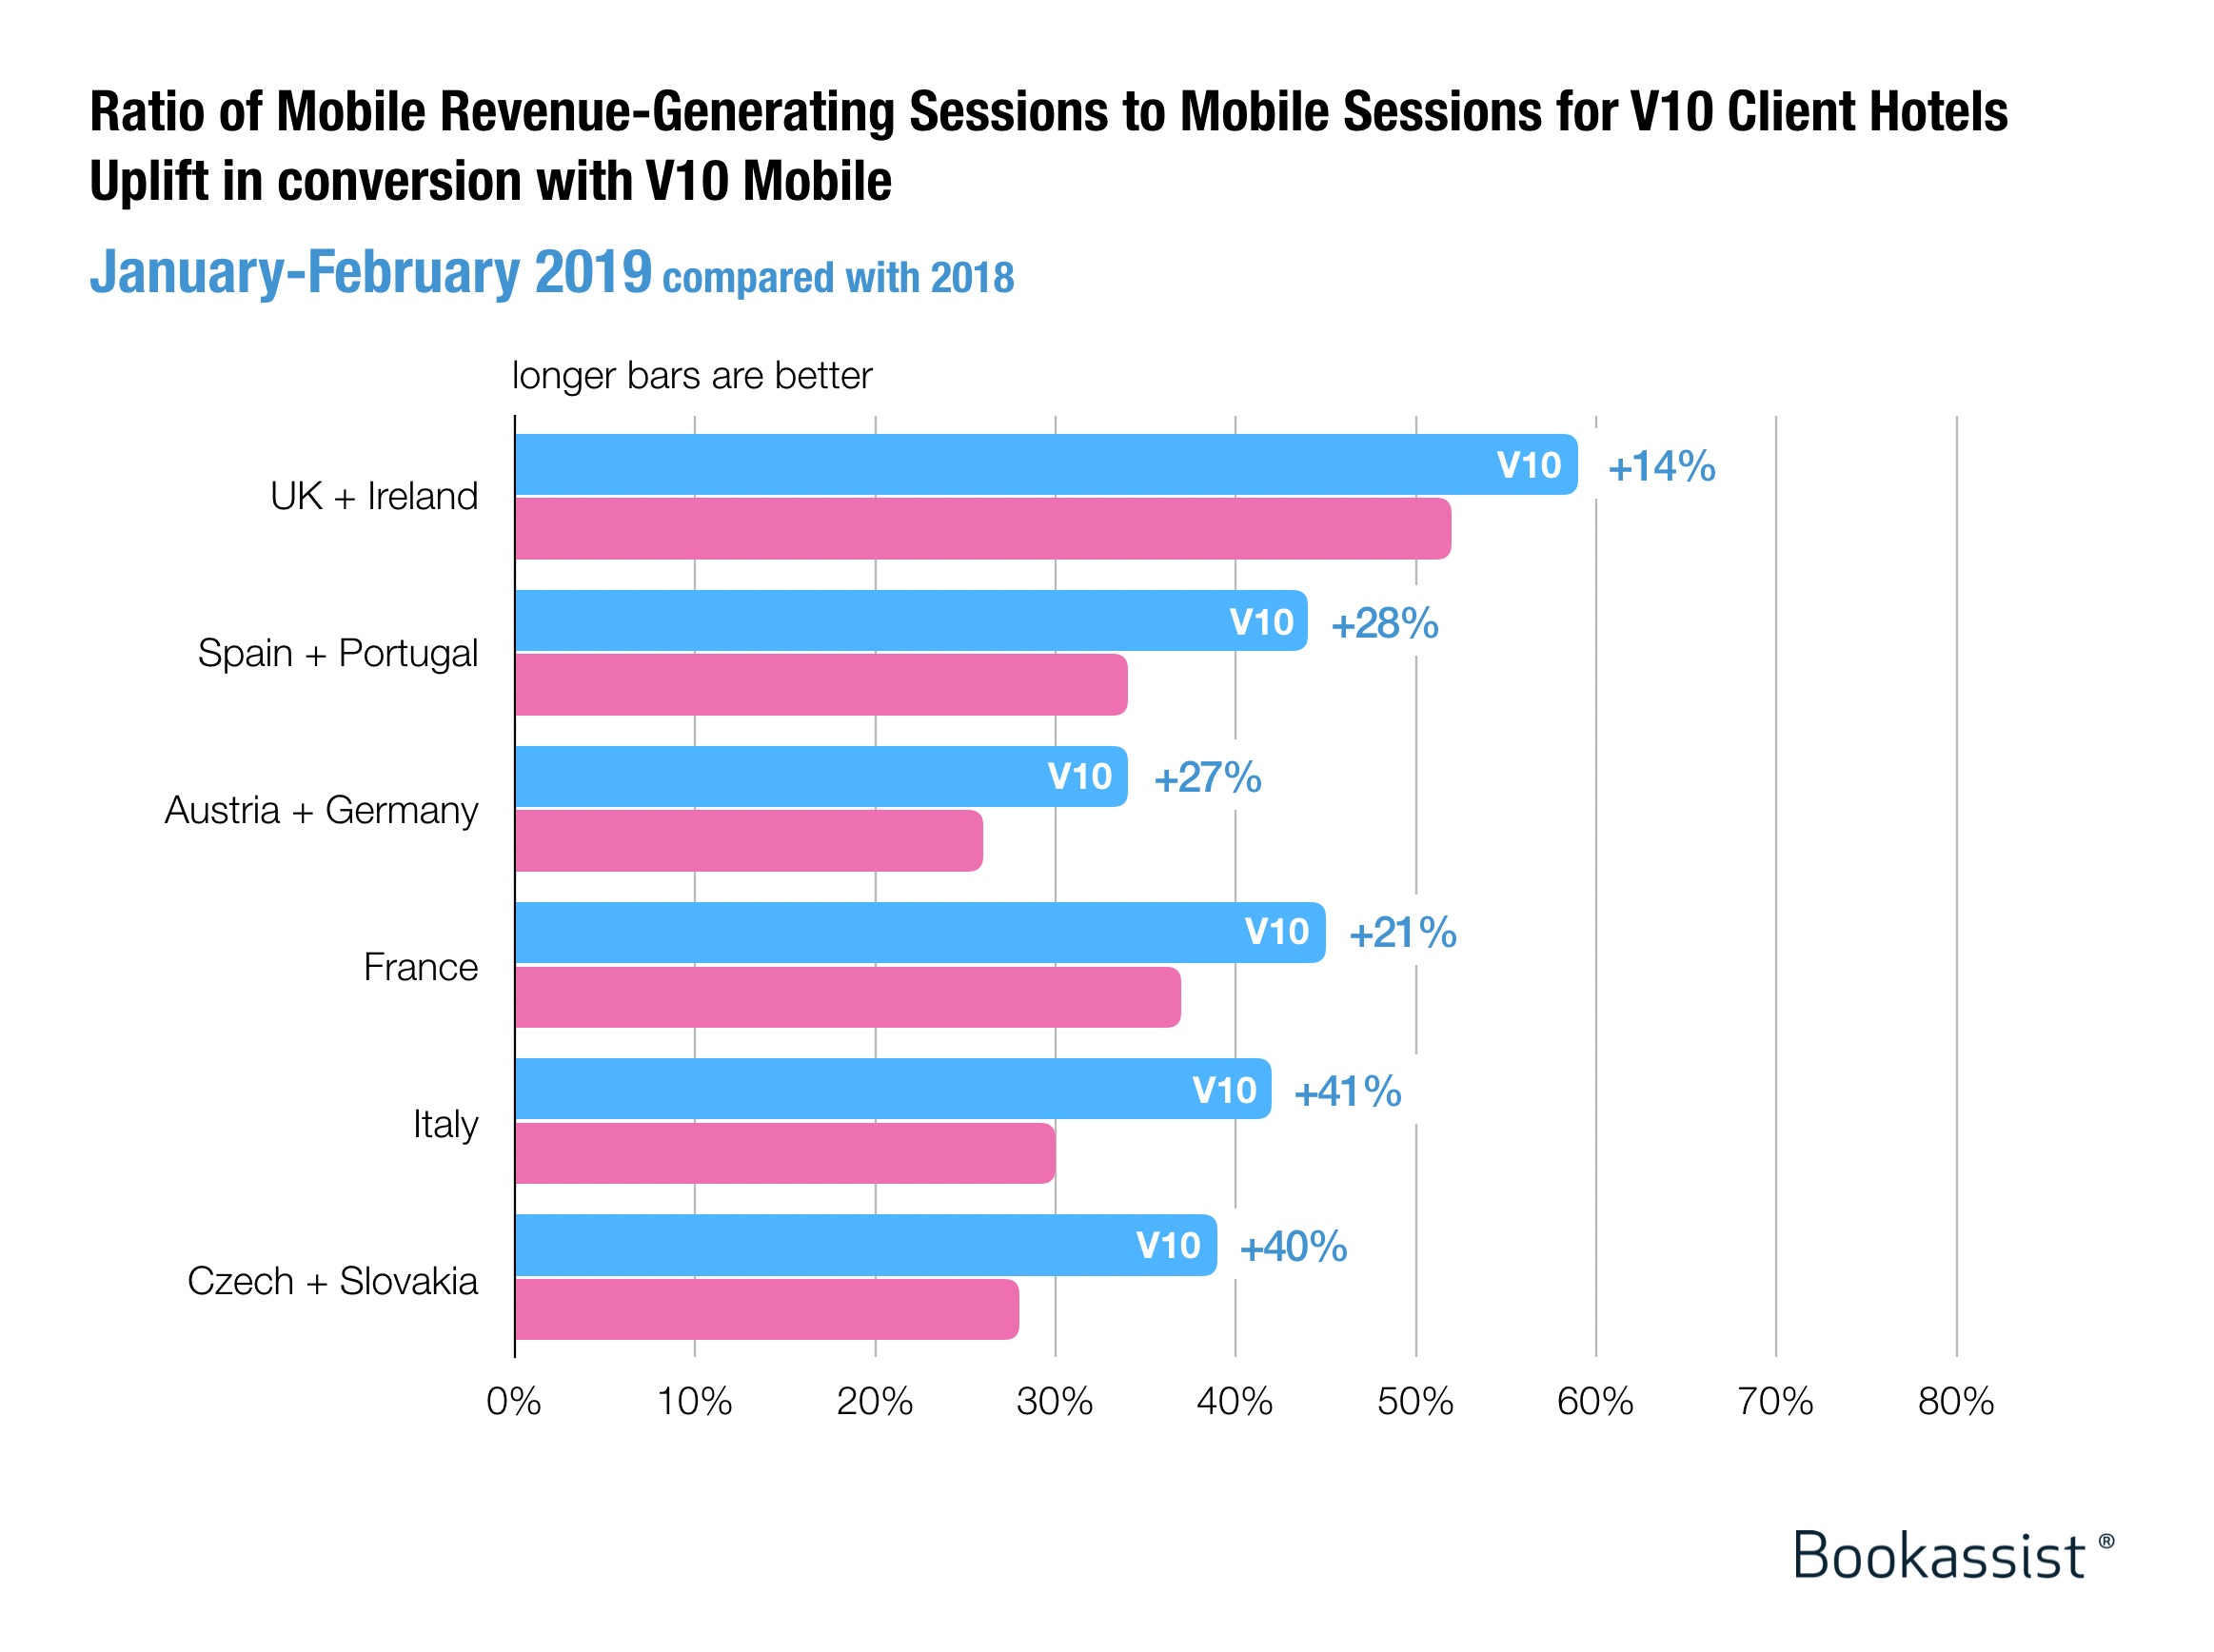 grafico a barre che confronta il rapporto delle sessioni generatrici di entrate per dispositivi mobili e desktop con prestazioni di anno in anno dal 2018 al 2019